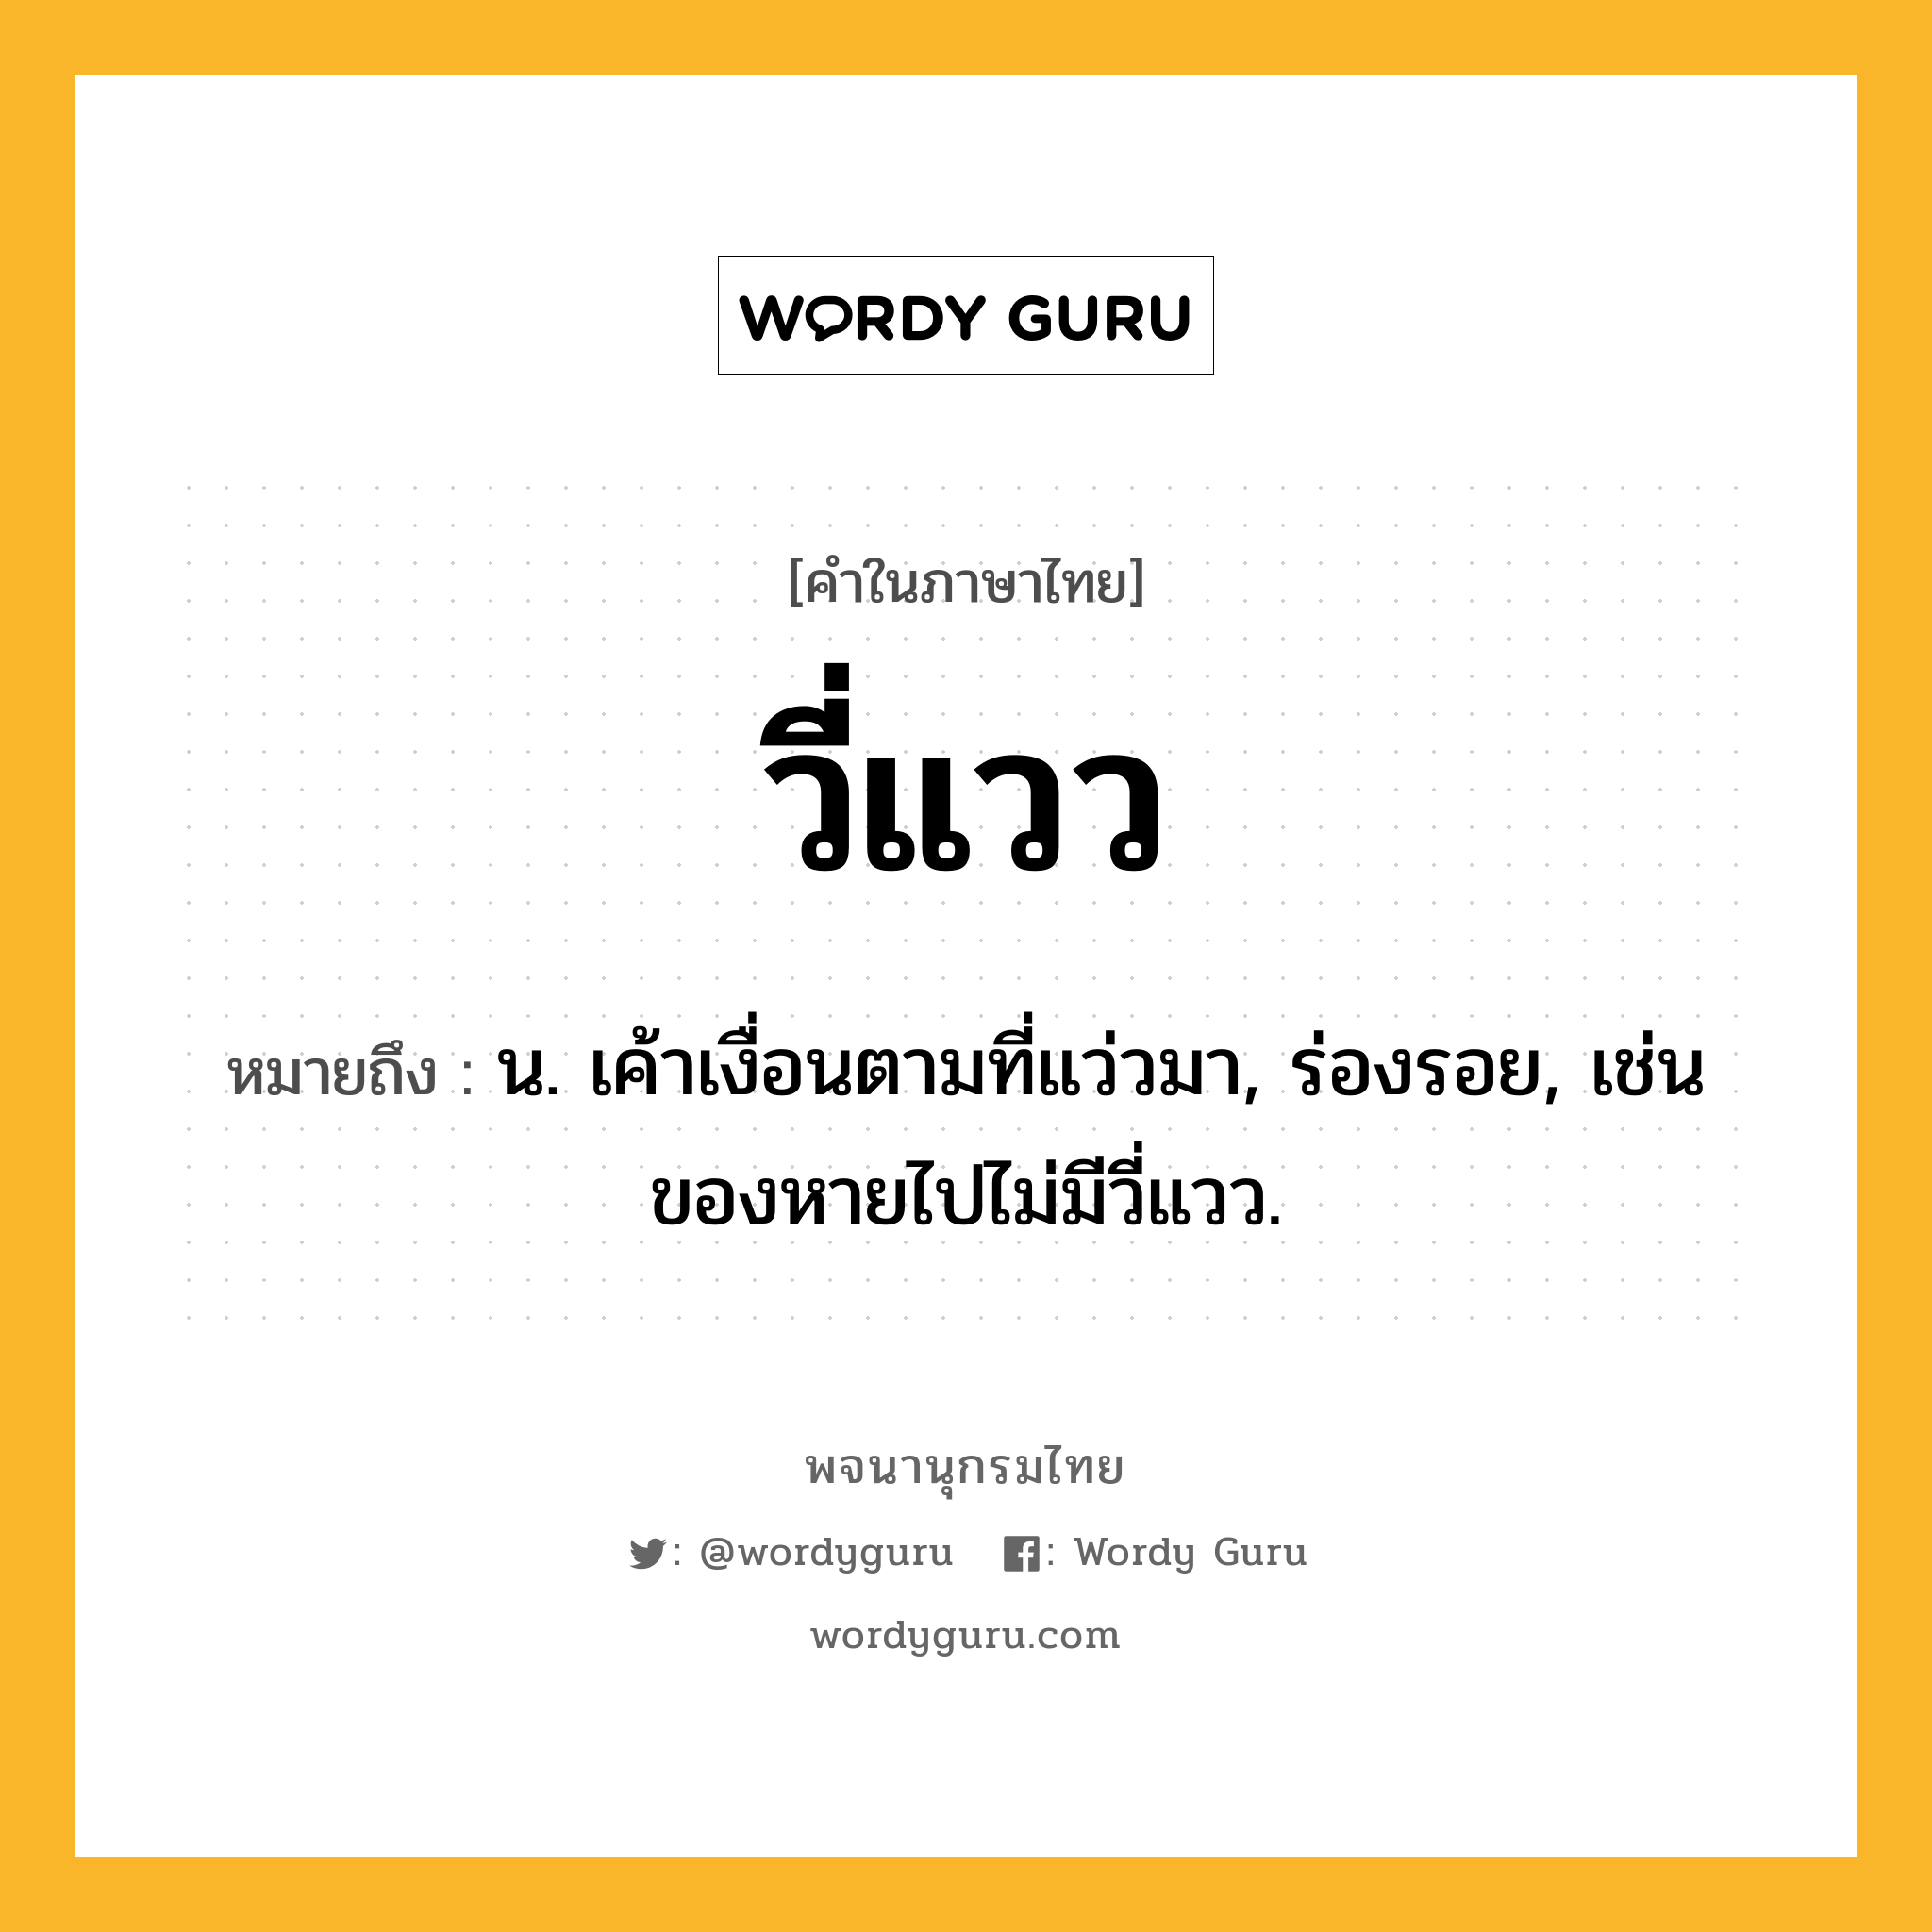 วี่แวว หมายถึงอะไร?, คำในภาษาไทย วี่แวว หมายถึง น. เค้าเงื่อนตามที่แว่วมา, ร่องรอย, เช่น ของหายไปไม่มีวี่แวว.